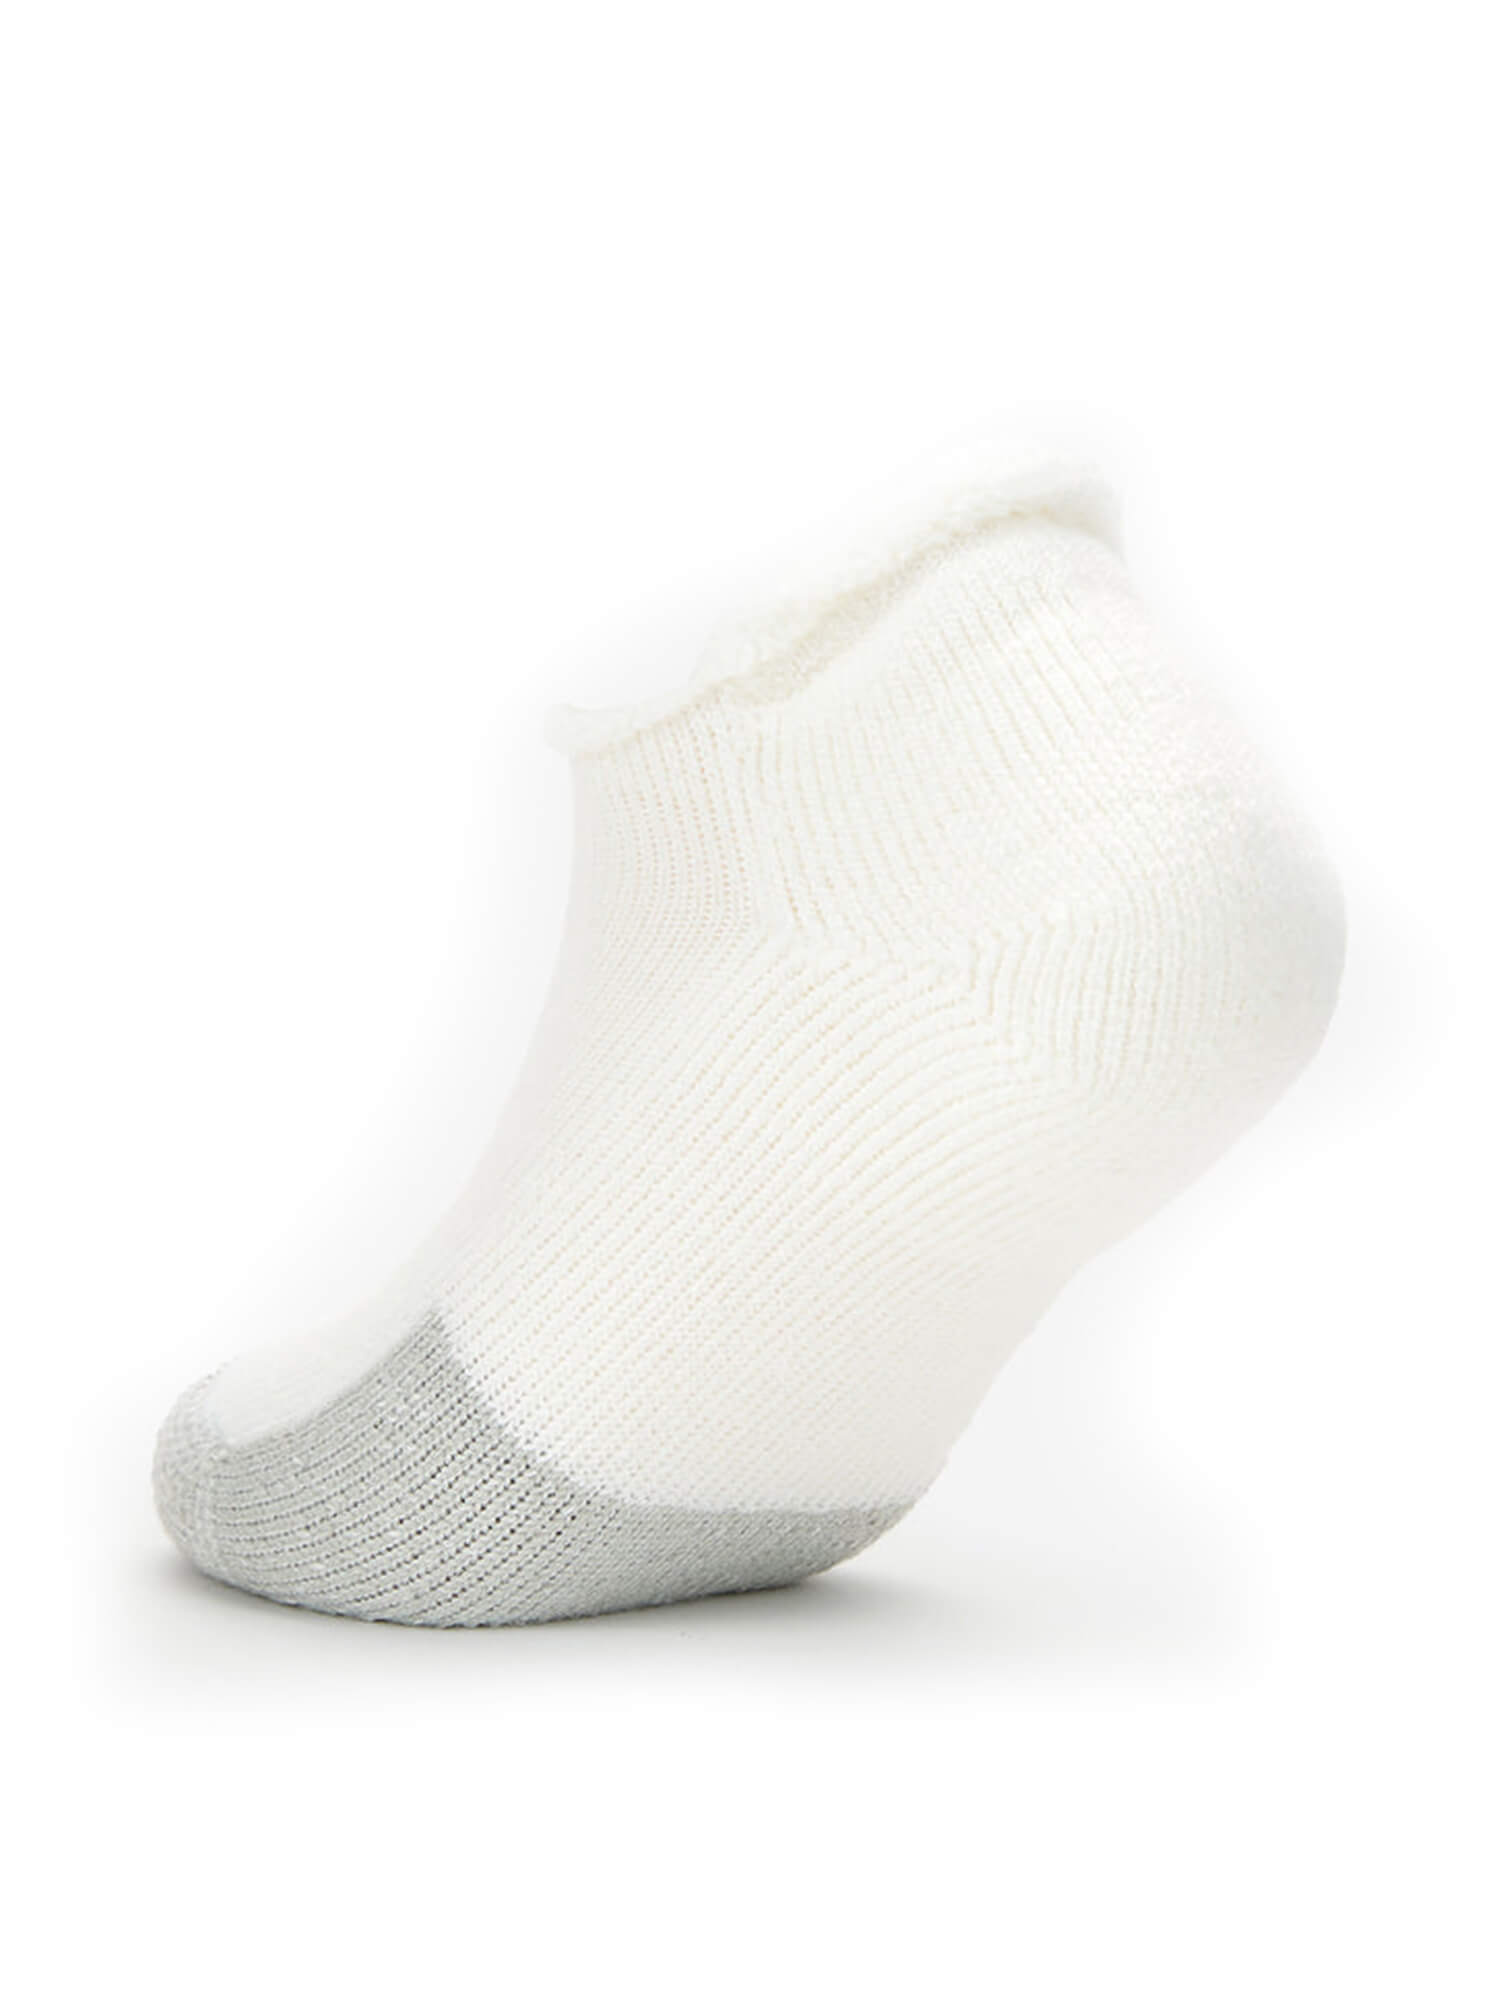 Heel of Thorlos Tennis Rolltop Socks in White